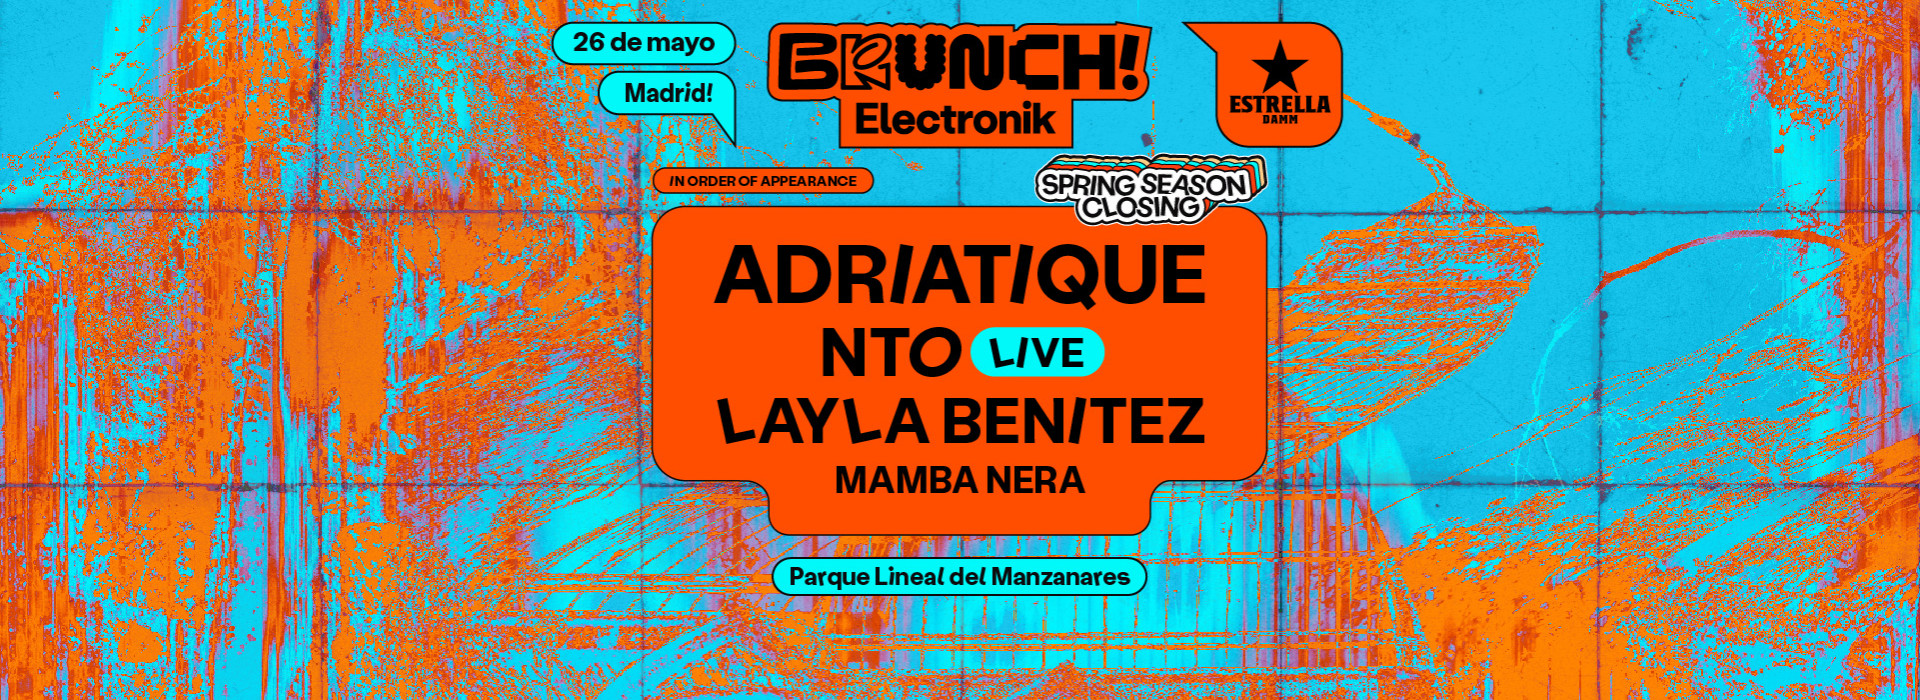 Brunch Electronik Madrid #6